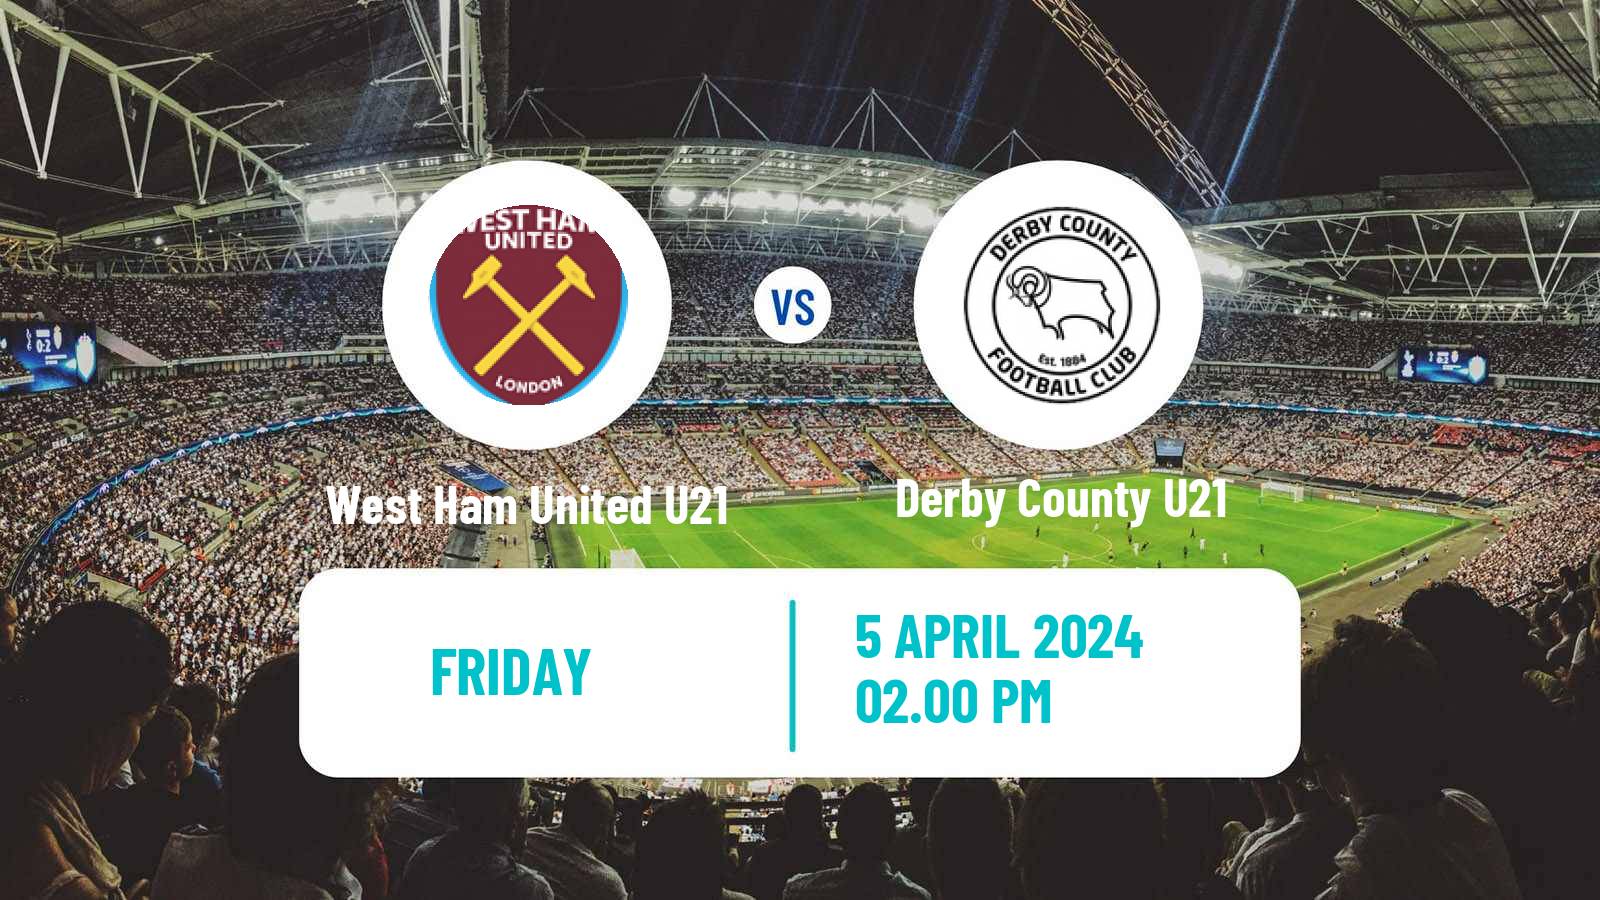 Soccer English Premier League 2 West Ham United U21 - Derby County U21